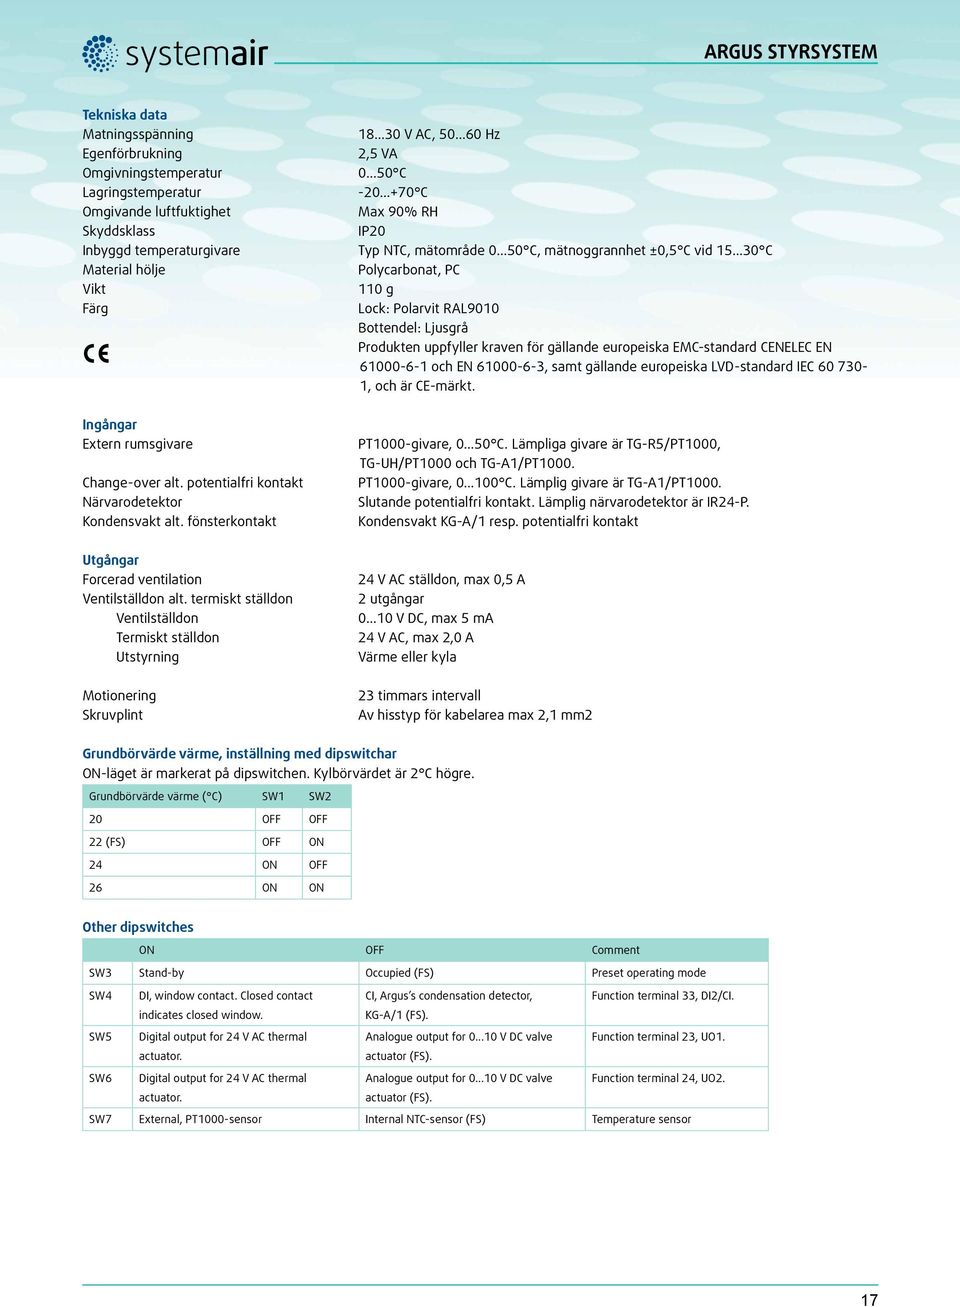 ..30 C Polycarbonat, PC 110 g Lock: Polarvit RAL9010 Bottendel: Ljusgrå Produkten uppfyller kraven för gällande europeiska EMC-standard CENELEC EN 61000-6-1 och EN 61000-6-3, samt gällande europeiska